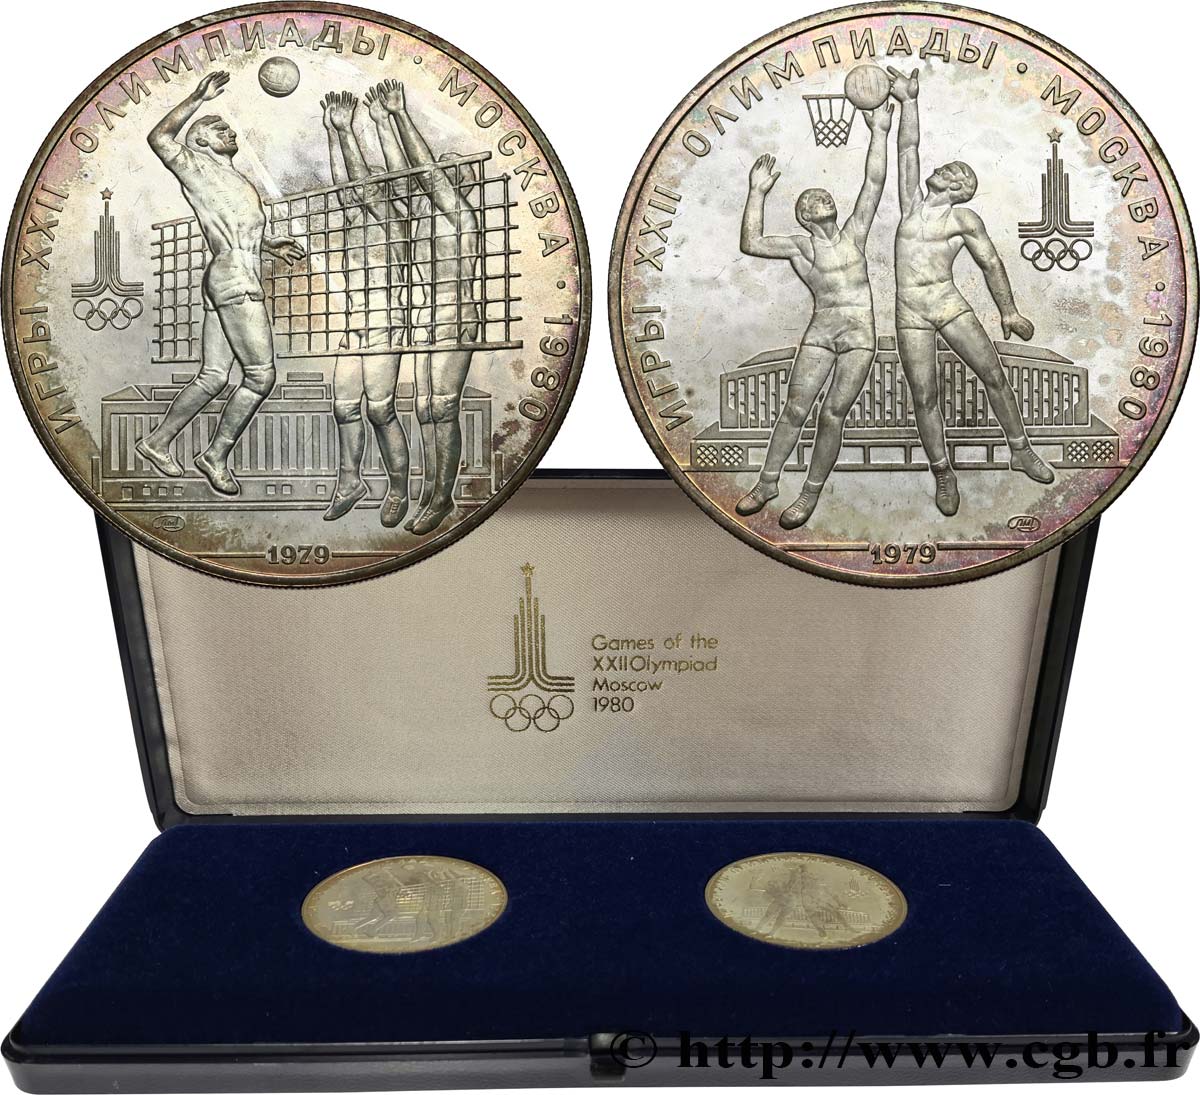 RUSSIA - USSR Série 2 monnaies Jeux Olympiques de Moscou 1980 1979 Moscou MS 